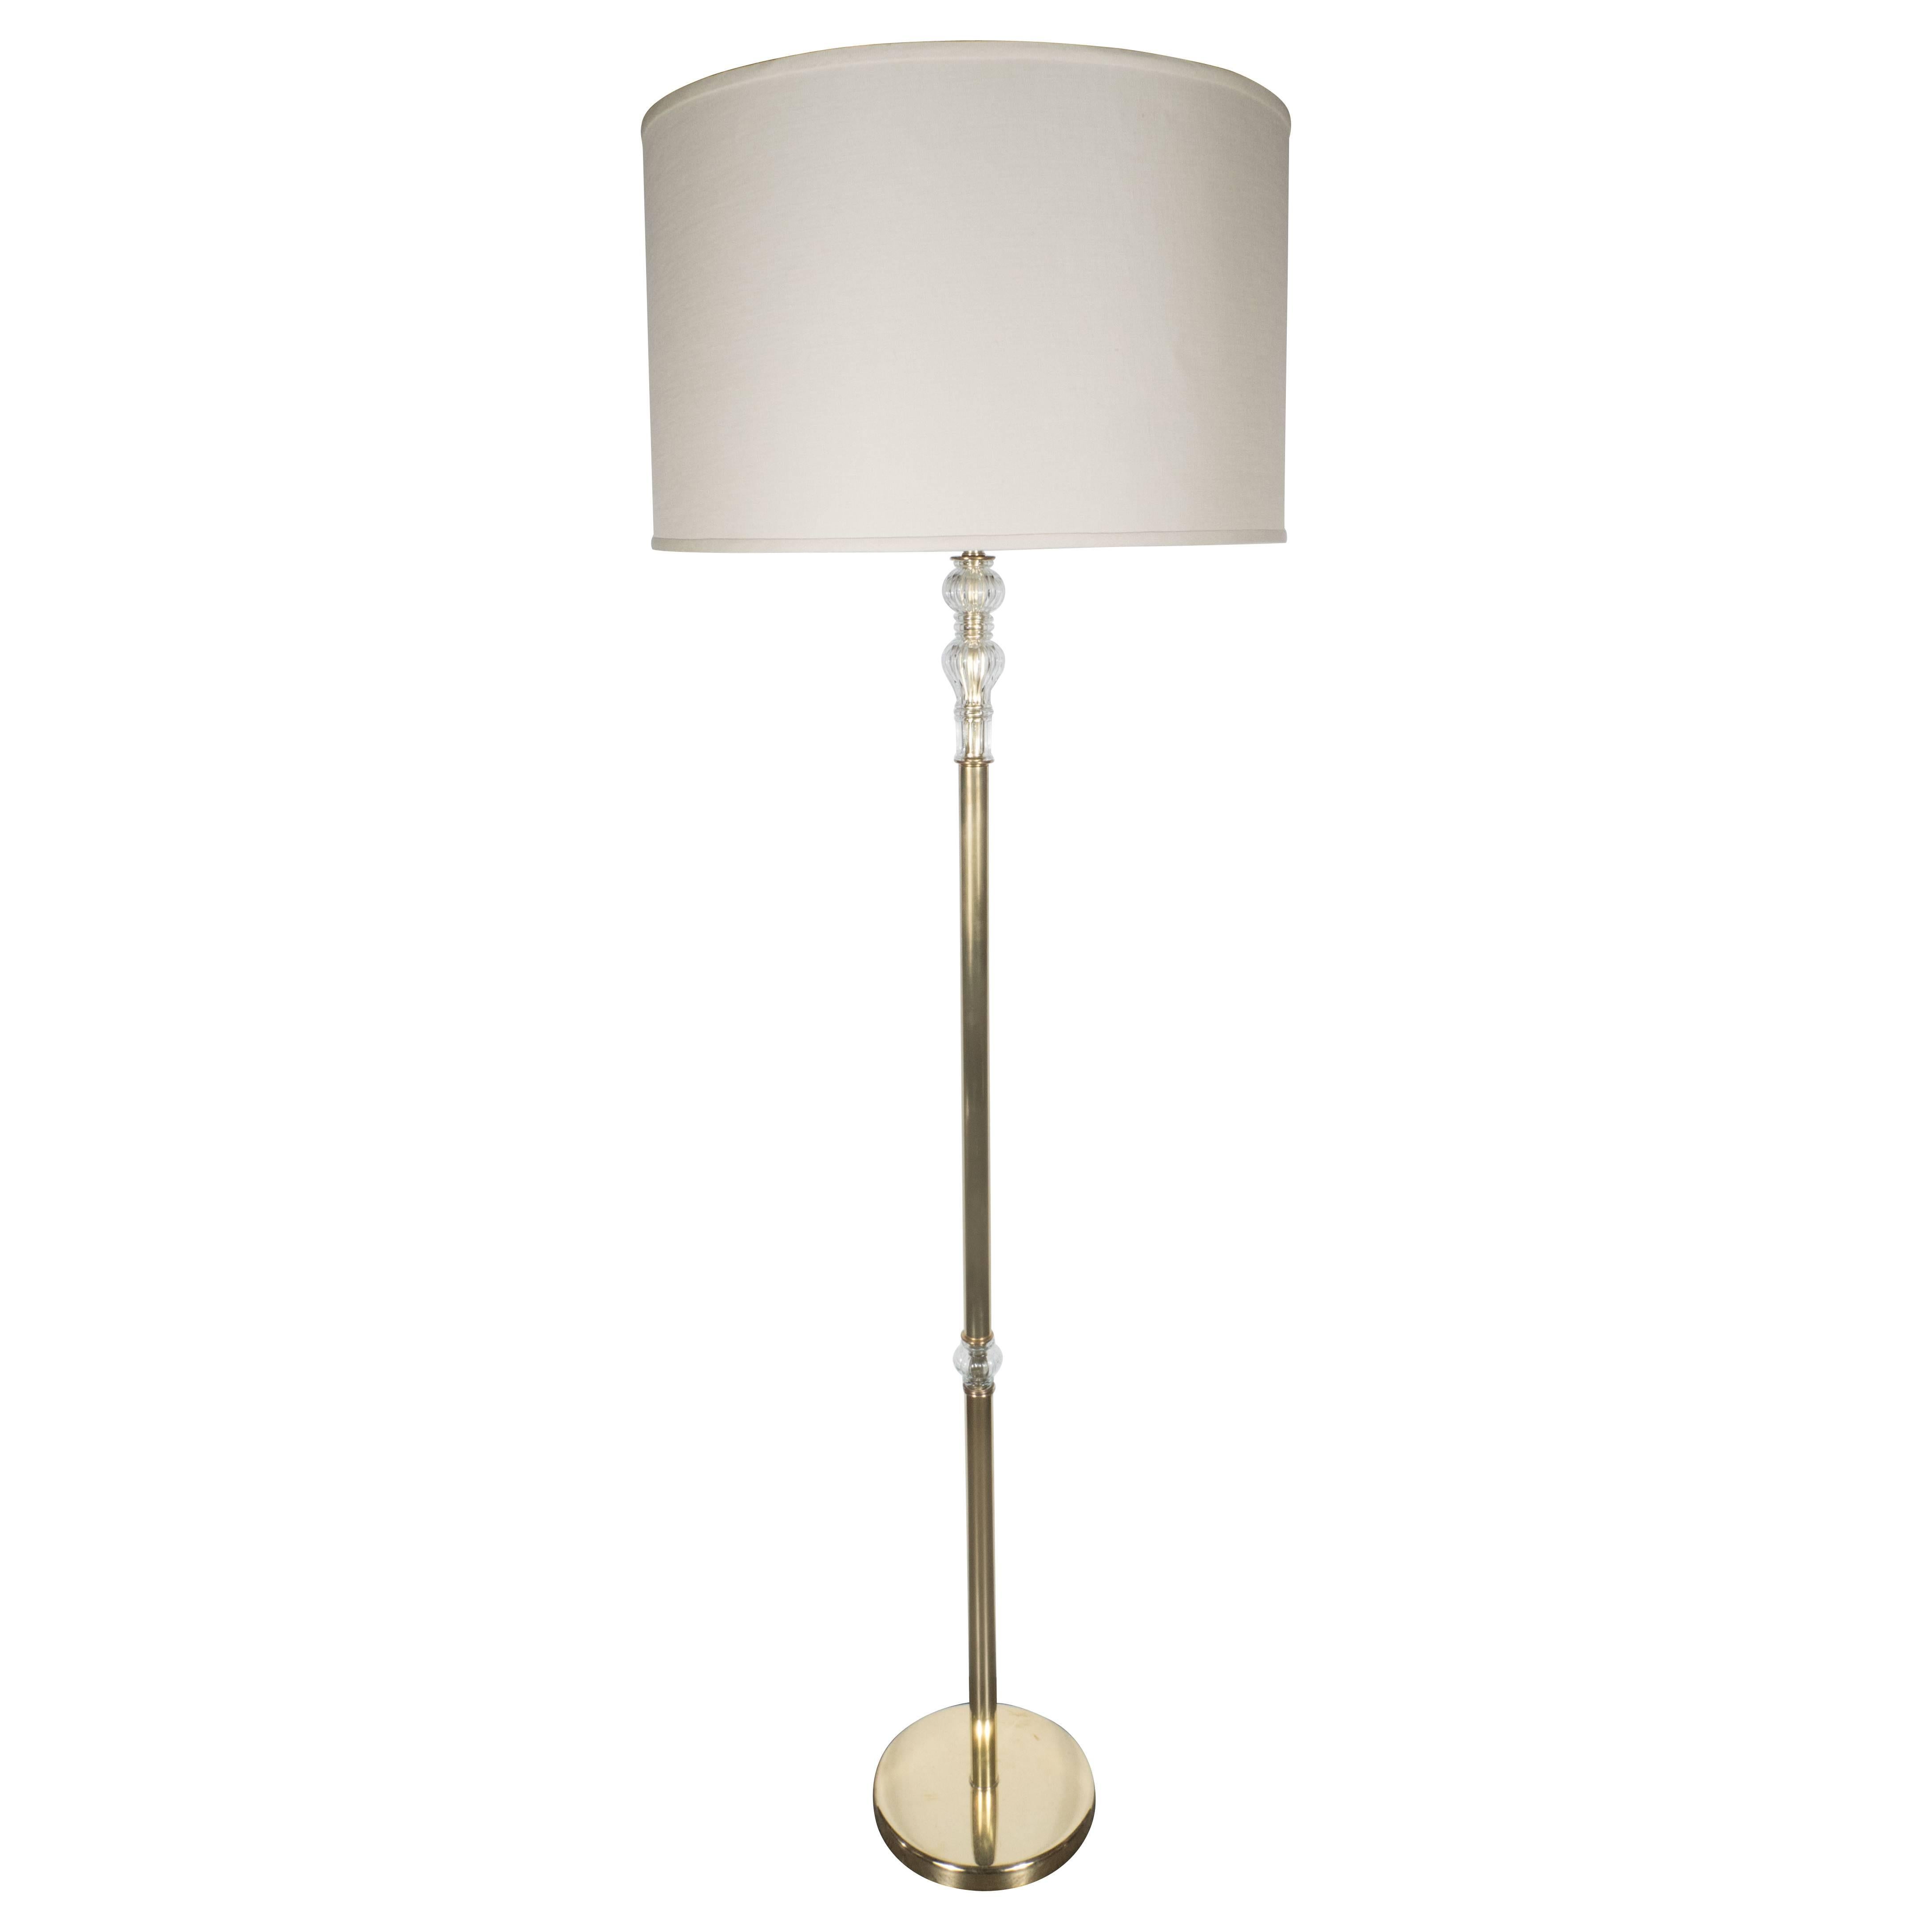 Glamorous Mid-Century Modern Floor Lamp in Handblown Murano Glass and Brass